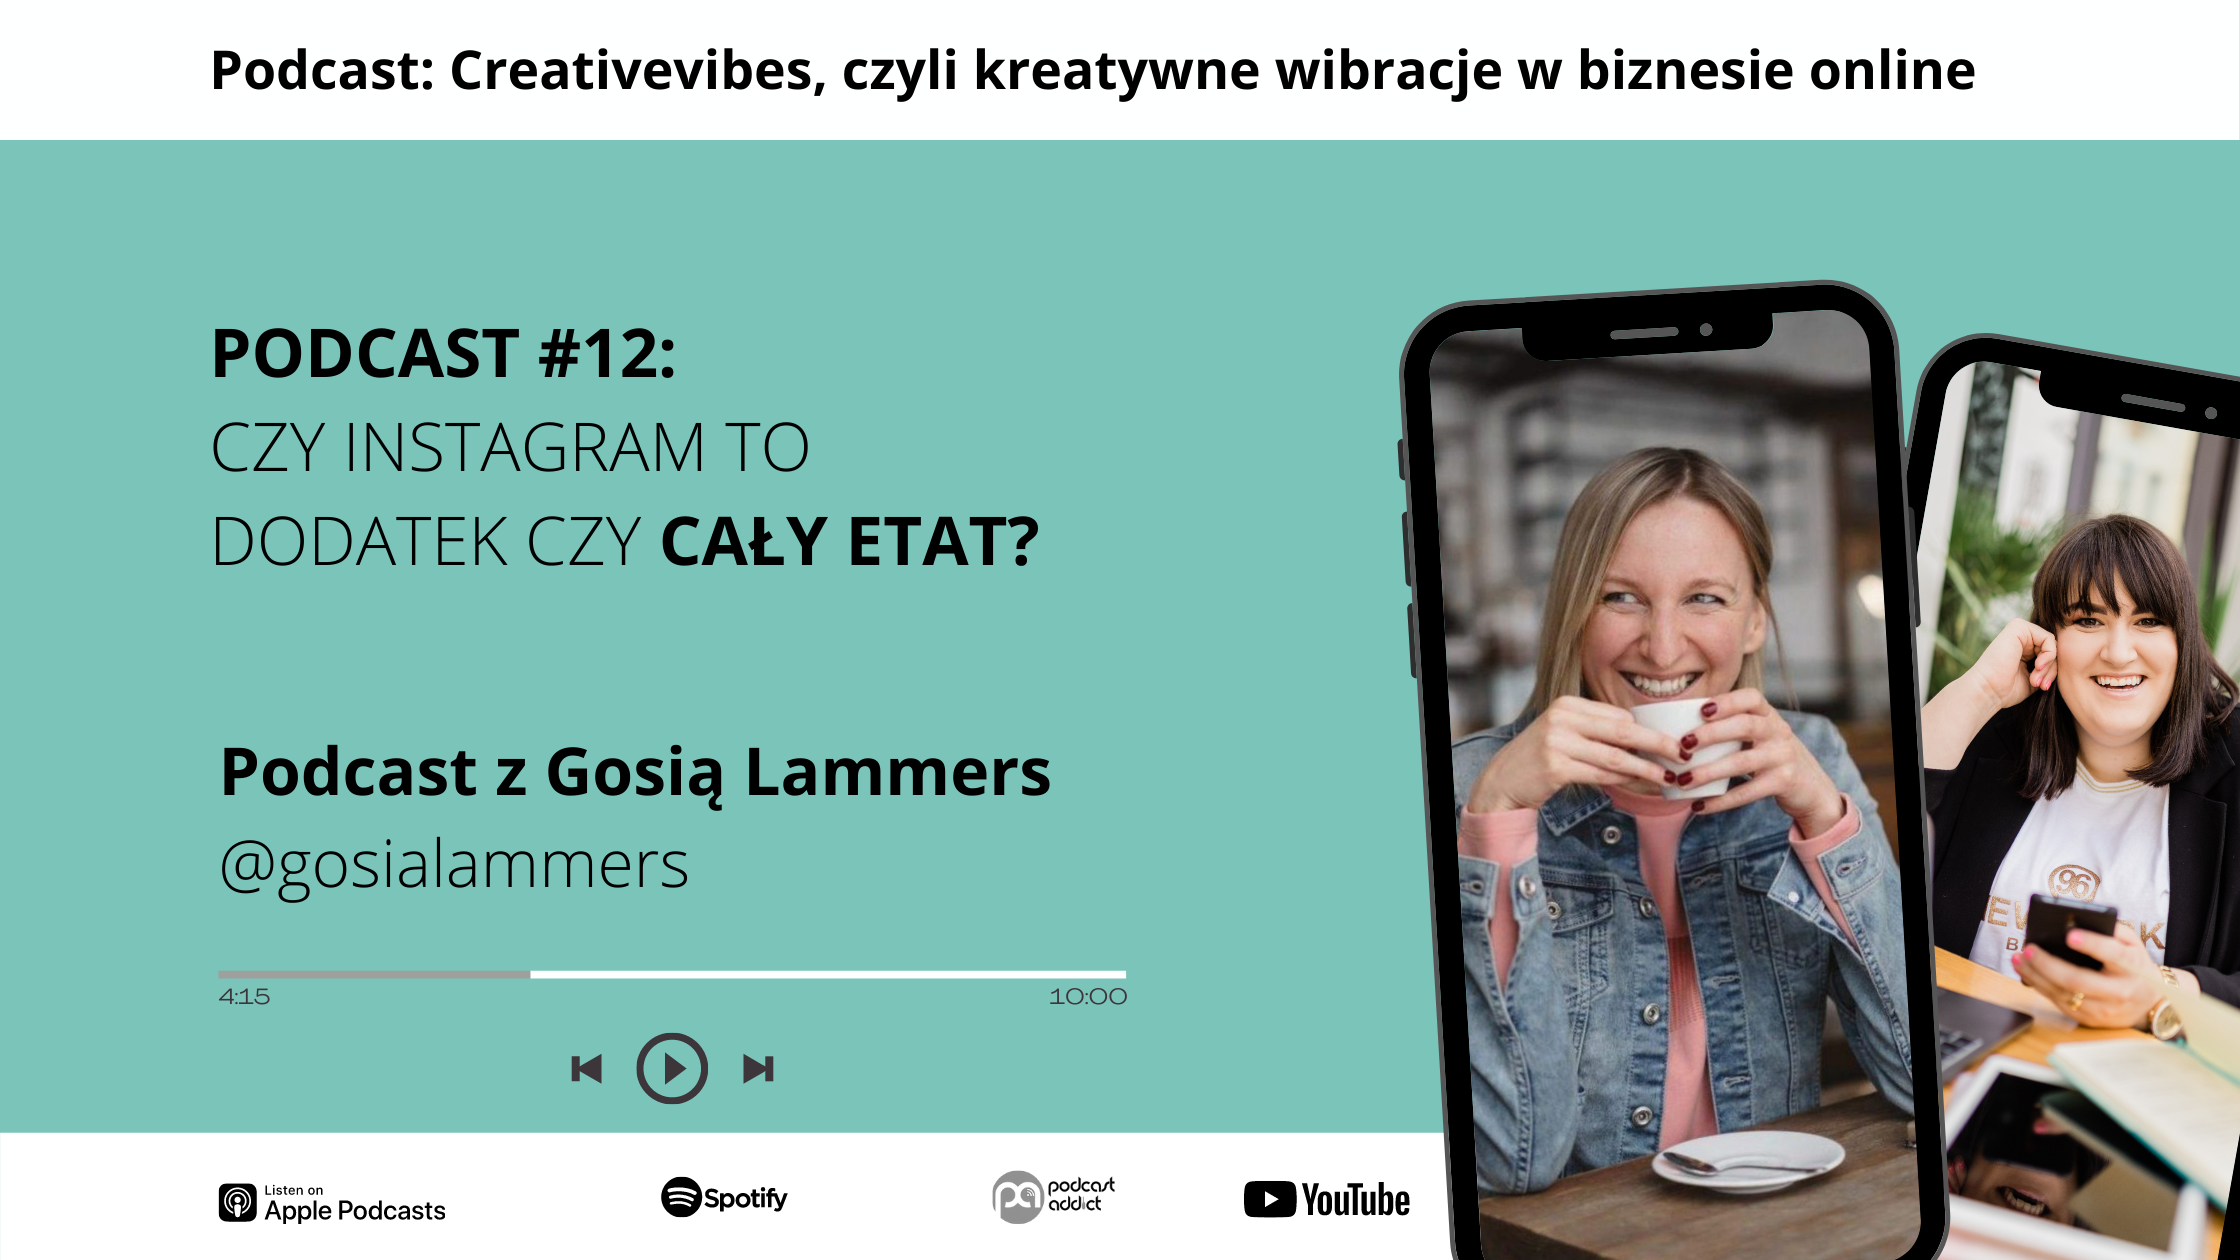 Podcast Creativevibes - Czy Instagram to dodatek czy cały etat? Gosia Lammers